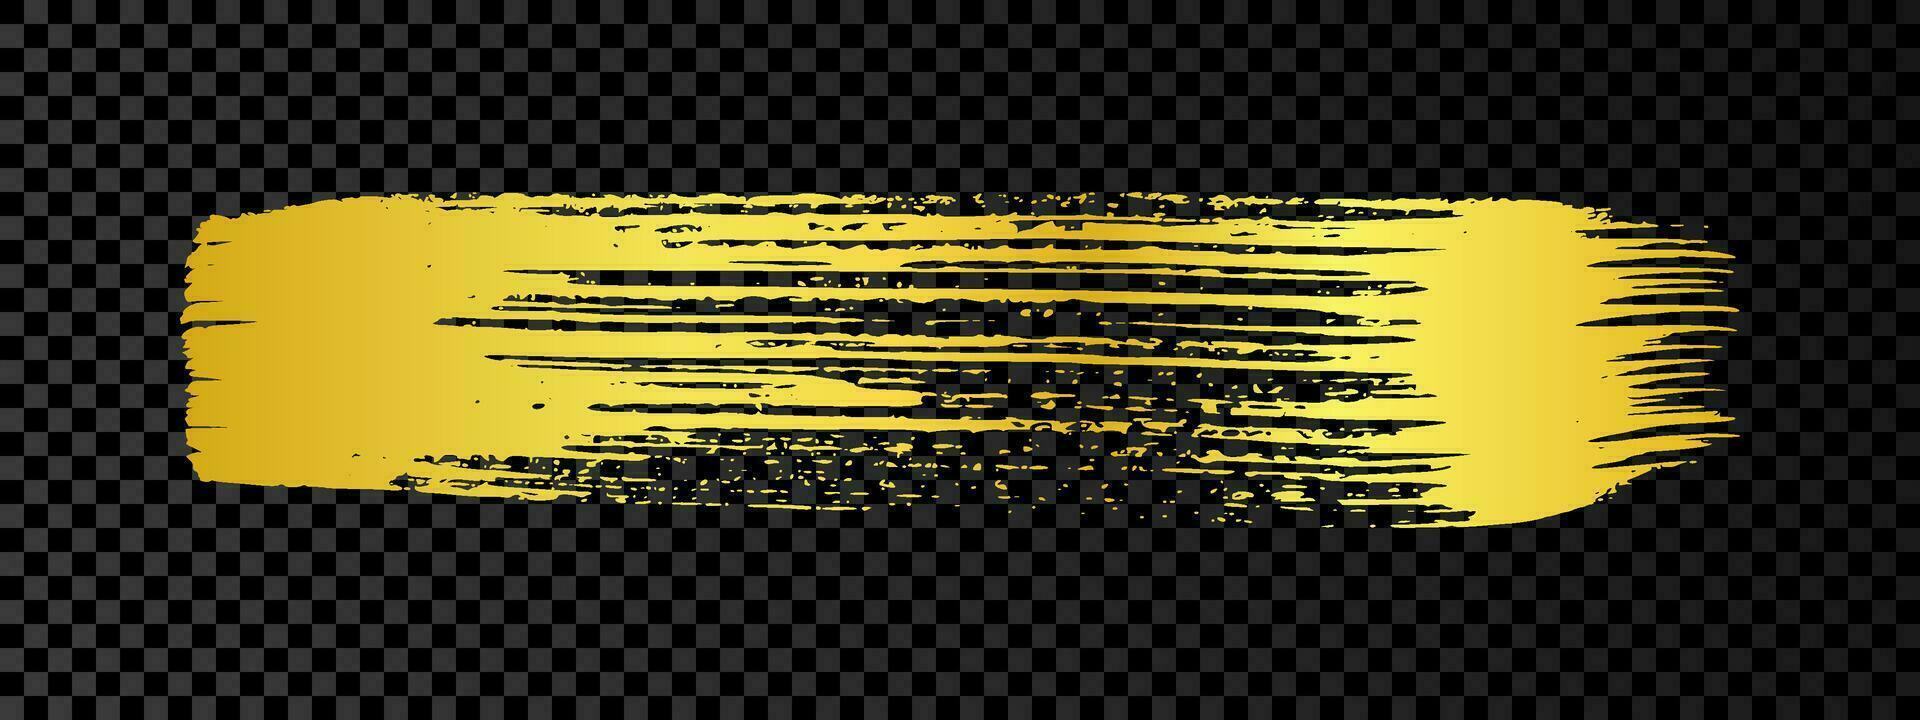 guld grunge borsta stroke. målad bläck rand. guld bläck fläck isolerat på mörk bakgrund. vektor illustration